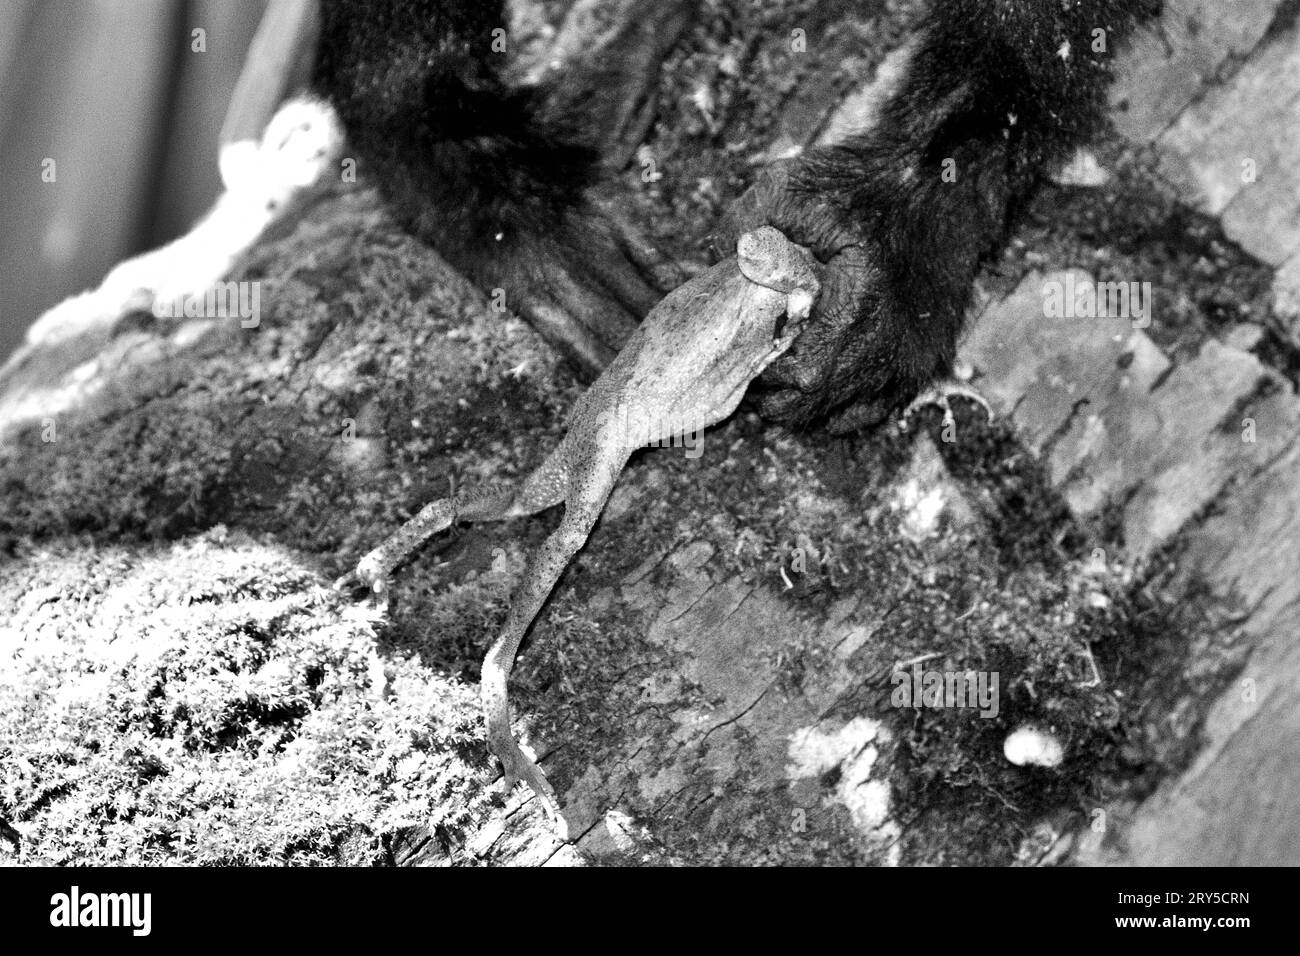 Die Hände eines jungen Individuums von Sulawesi-Makaken (Macaca nigra) werden fotografiert, während er einen Frosch schnappt, den er im Tangkoko Nature Reserve, Nord-Sulawesi, Indonesien, gefangen hat. Timothy O'Brien und Margaret Kinnaird – Primatenforscher – haben beobachtet und berichtet, dass Raubüberfälle an Frosch durch Makaken, sowie an Obstfledermaus, Flycatcher-Vogel, Waldgecko, und Eier von roten Jungvögeln. Ein kürzlich erschienener Bericht eines Wissenschaftlerteams unter der Leitung von Marine Joly ergab, dass die Temperatur im Tangkoko-Wald steigt und der Fruchtbestand insgesamt abnimmt. Zwischen 2012 und... Stockfoto